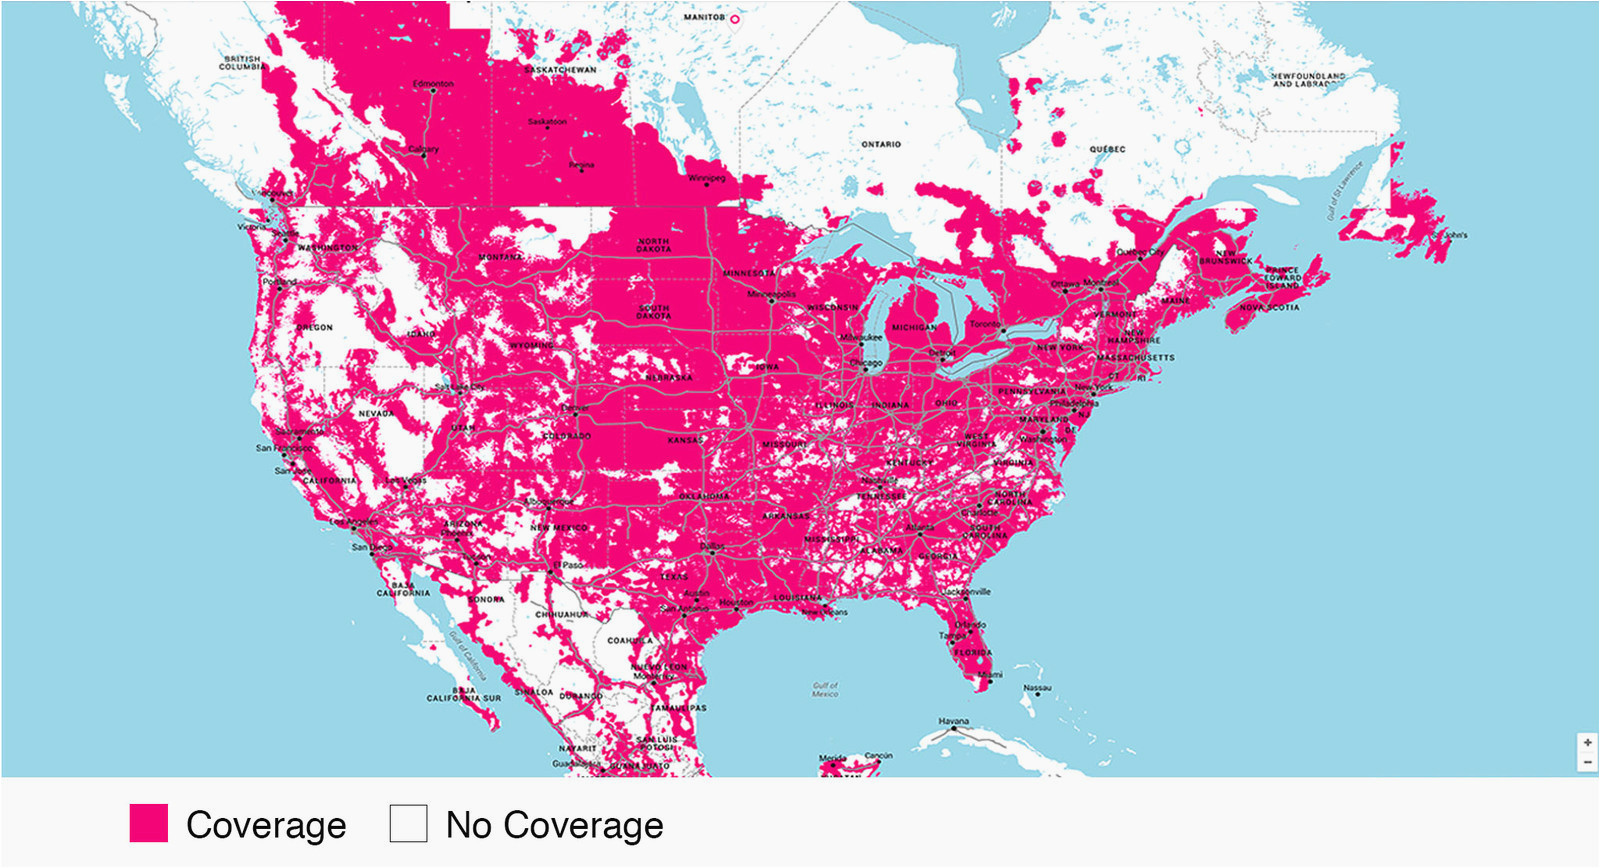 T Mobile Coverage Map Canada Verizon Wireless Coverage Map California Verizon Cell